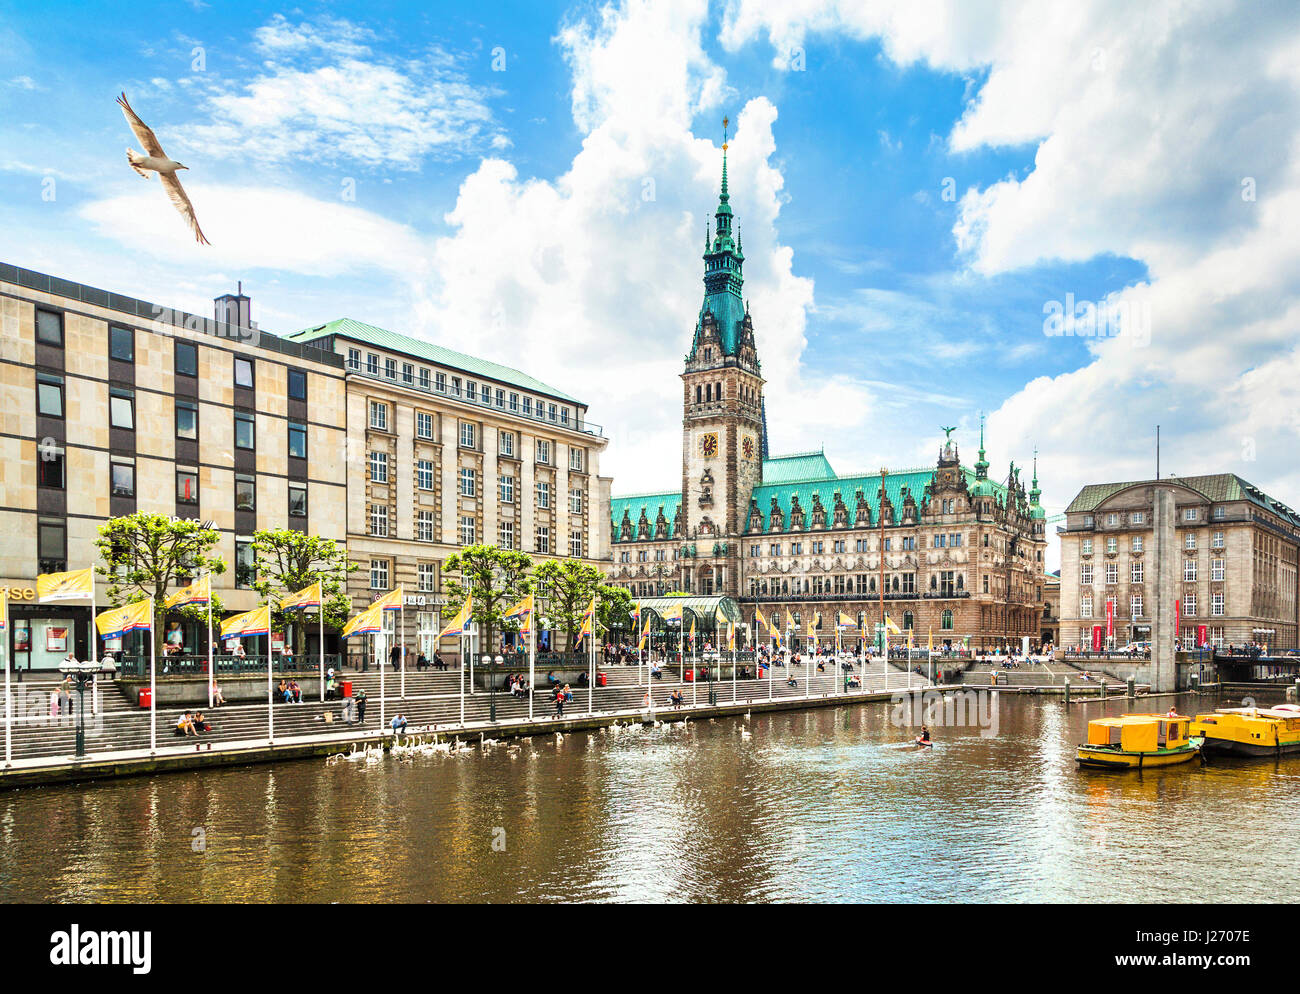 Schöne Aussicht auf die Hamburger Innenstadt mit Rathaus und Alster Fluss, Deutschland Stockfoto